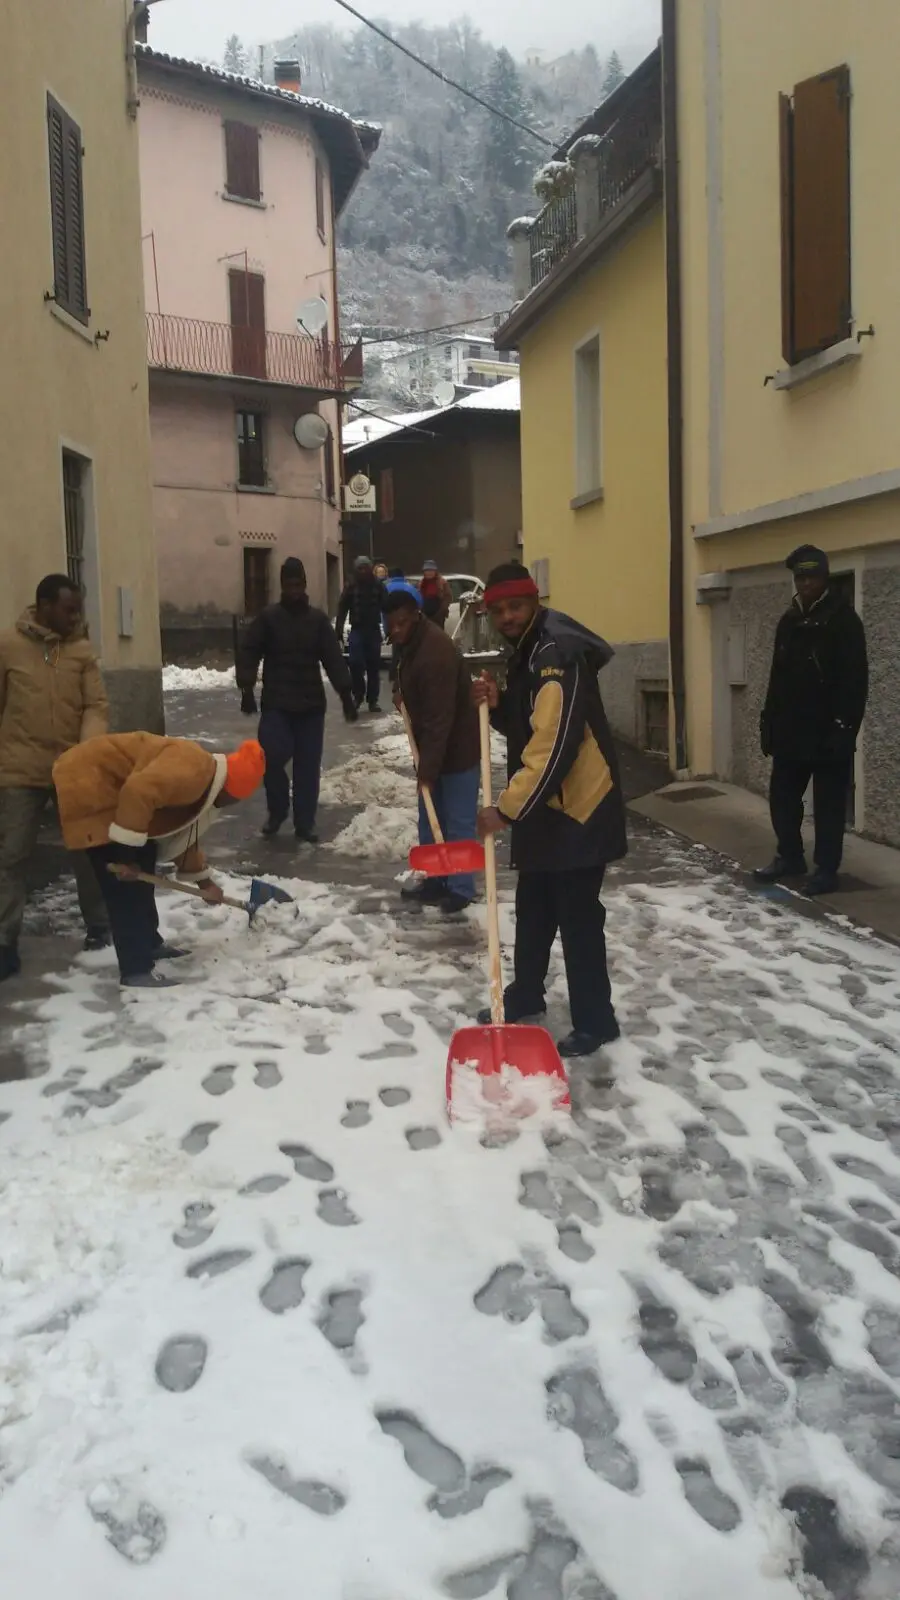 Profughi al lavoro ad Anfo per spalare la neve